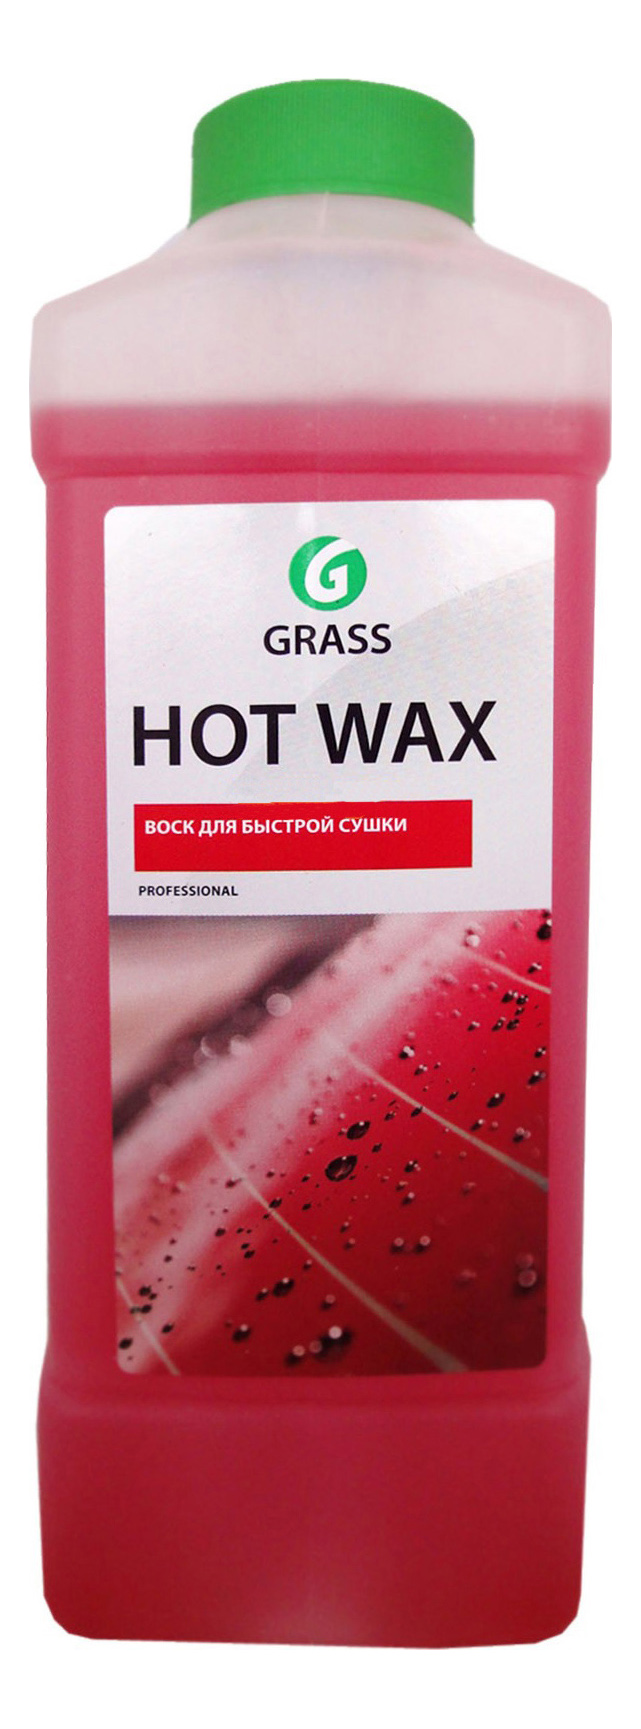 Воск горячий для быстрой сушки Grass Hot Wax 127100 1 л - купить в Москве, цены на Мегамаркет | 100001148422